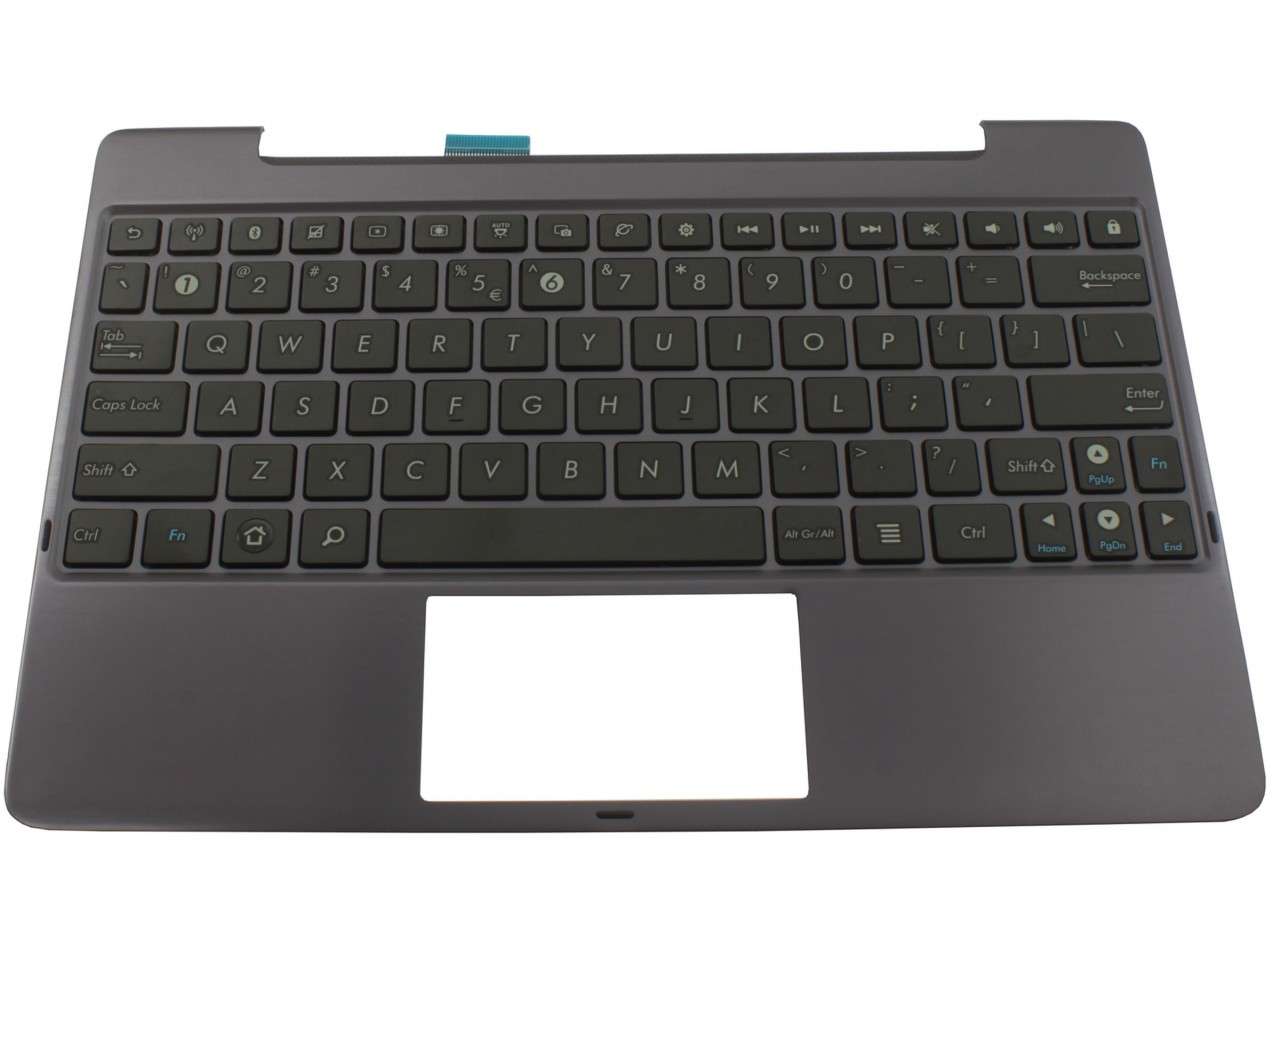 Tastatura Asus Transformer Prime TF700 neagra cu Palmrest Amethyst Gray